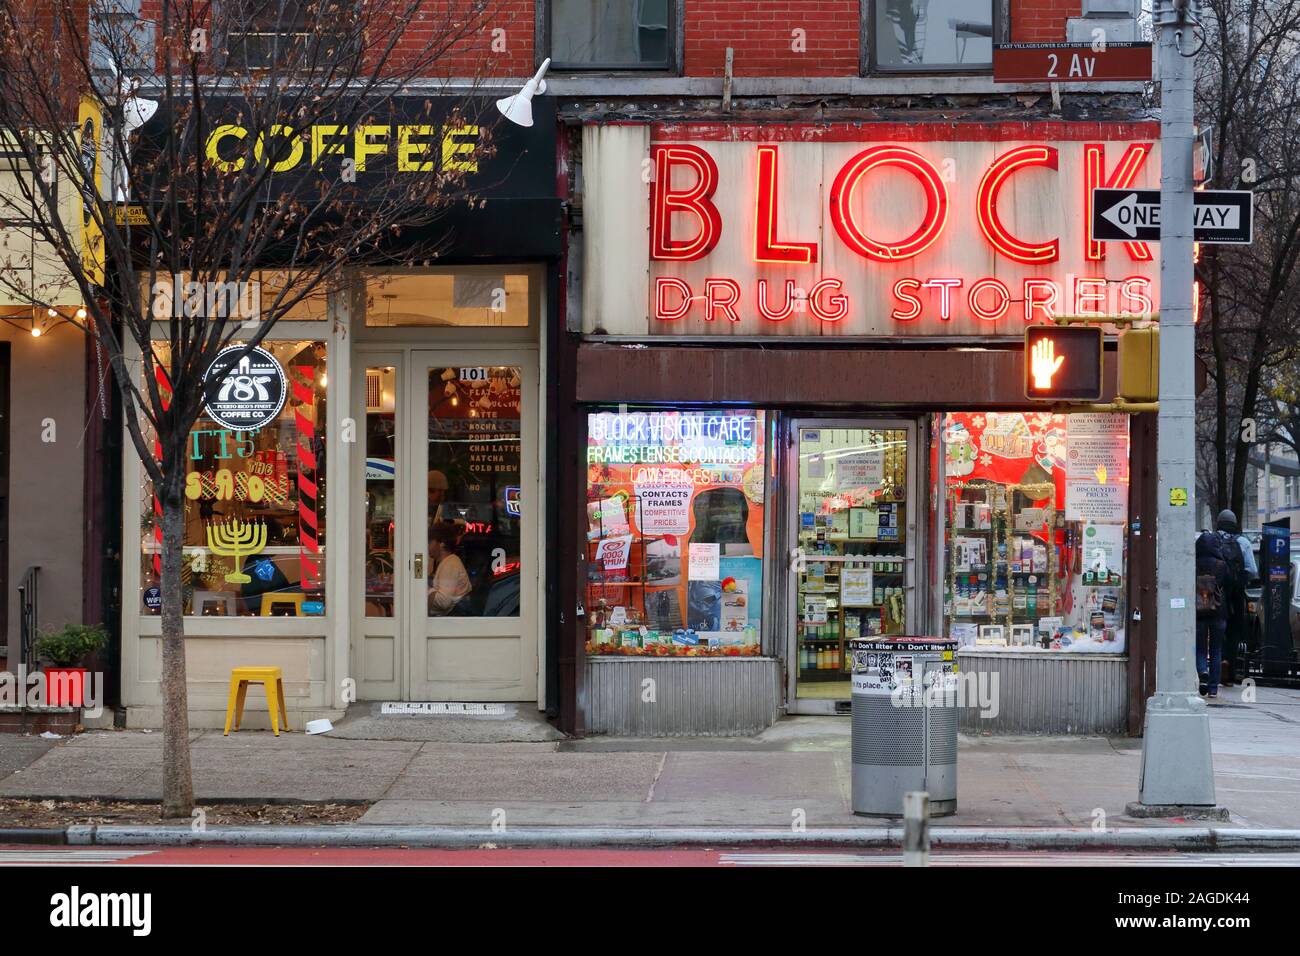 787 Coffee, Block Drug Store, 101 2nd Ave, New York, NY. Escaparates exteriores de un café de origen puertorriqueño y una farmacia de la época antigua en Manhattan. Foto de stock